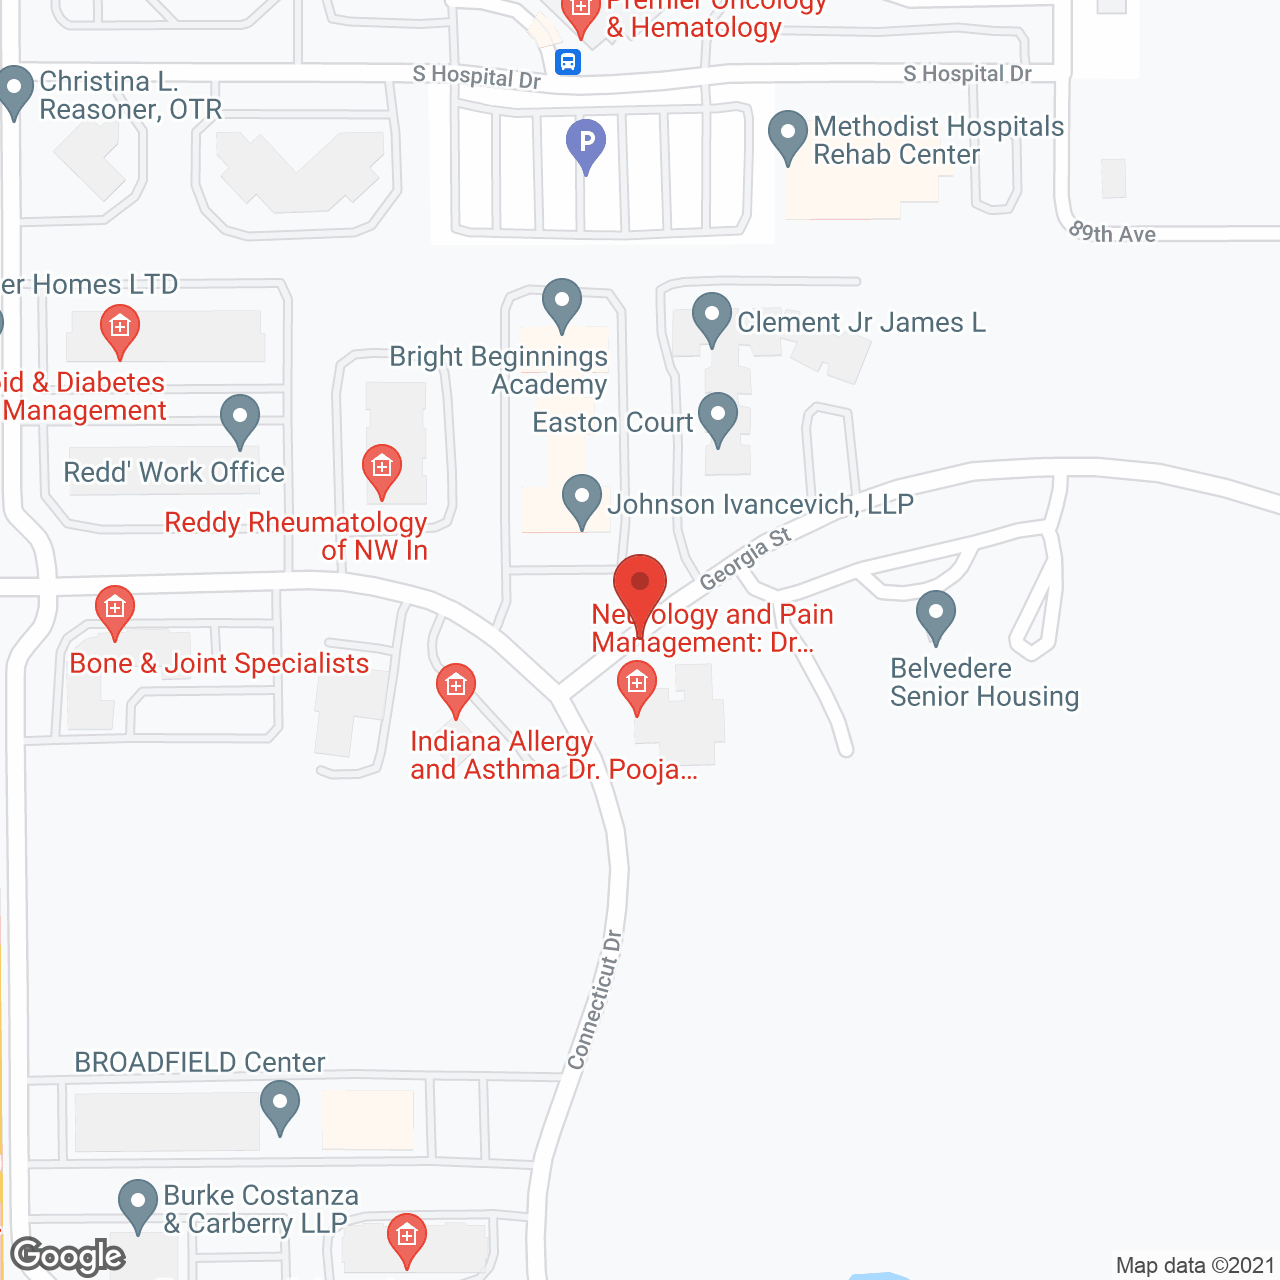 Belvedere Senior Housing in google map